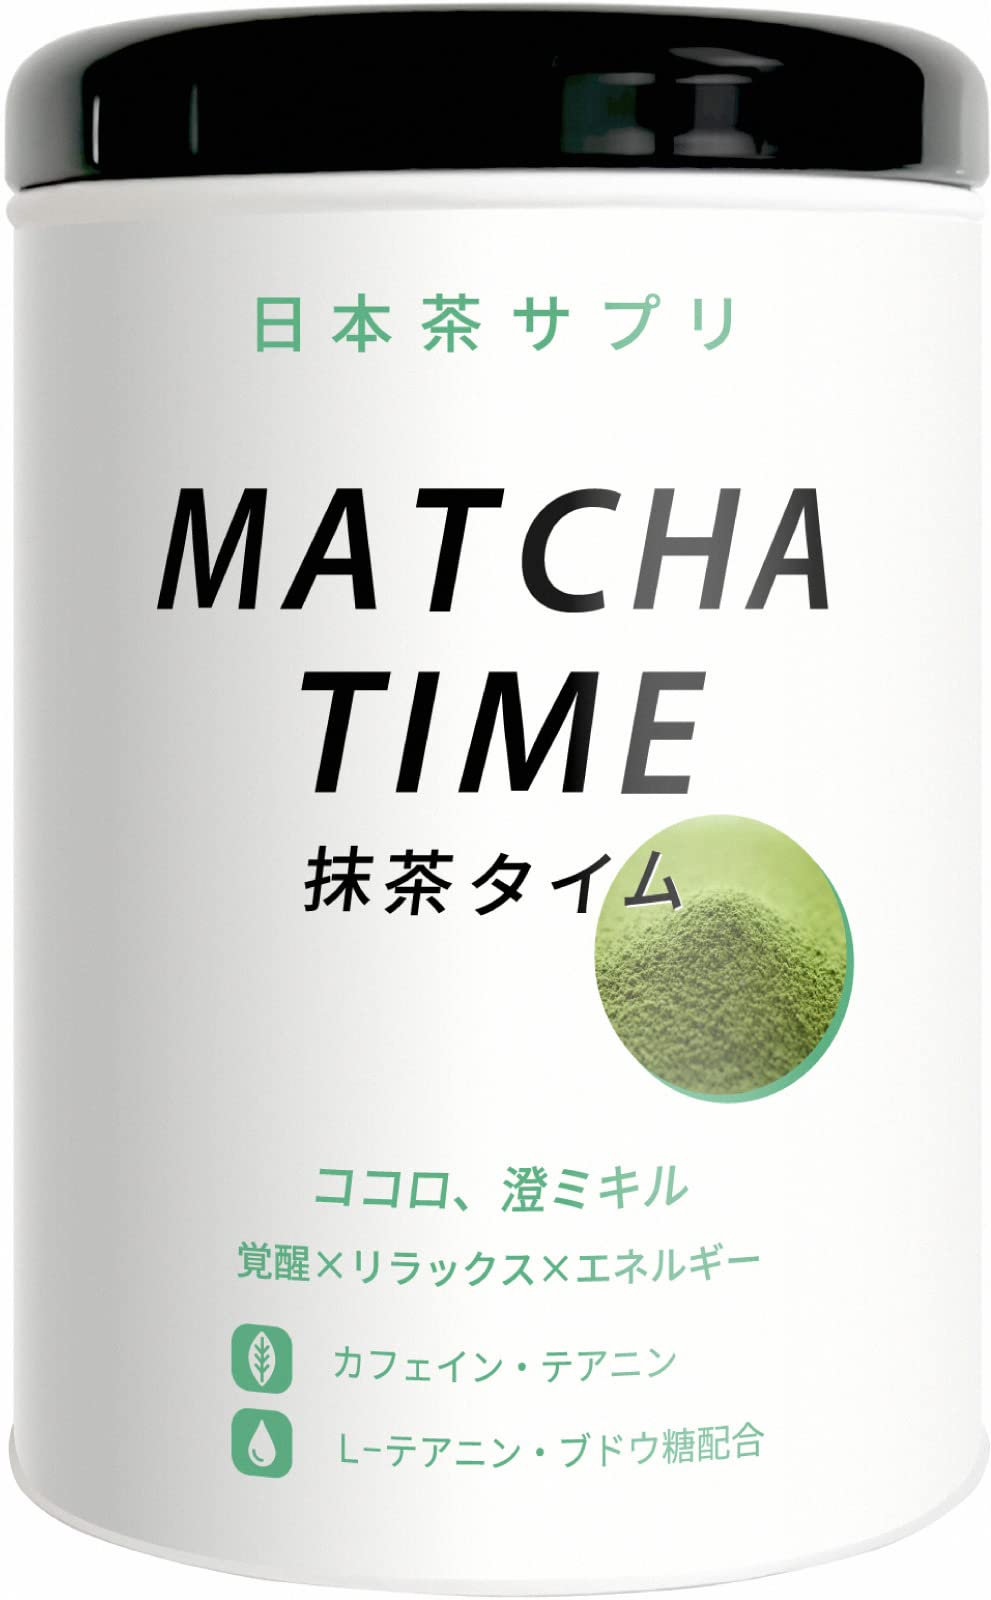 日本茶サプリ MATCHA TIME 抹茶タイム 抹茶粉末飲料 3g×15本 caffeine L-theanine